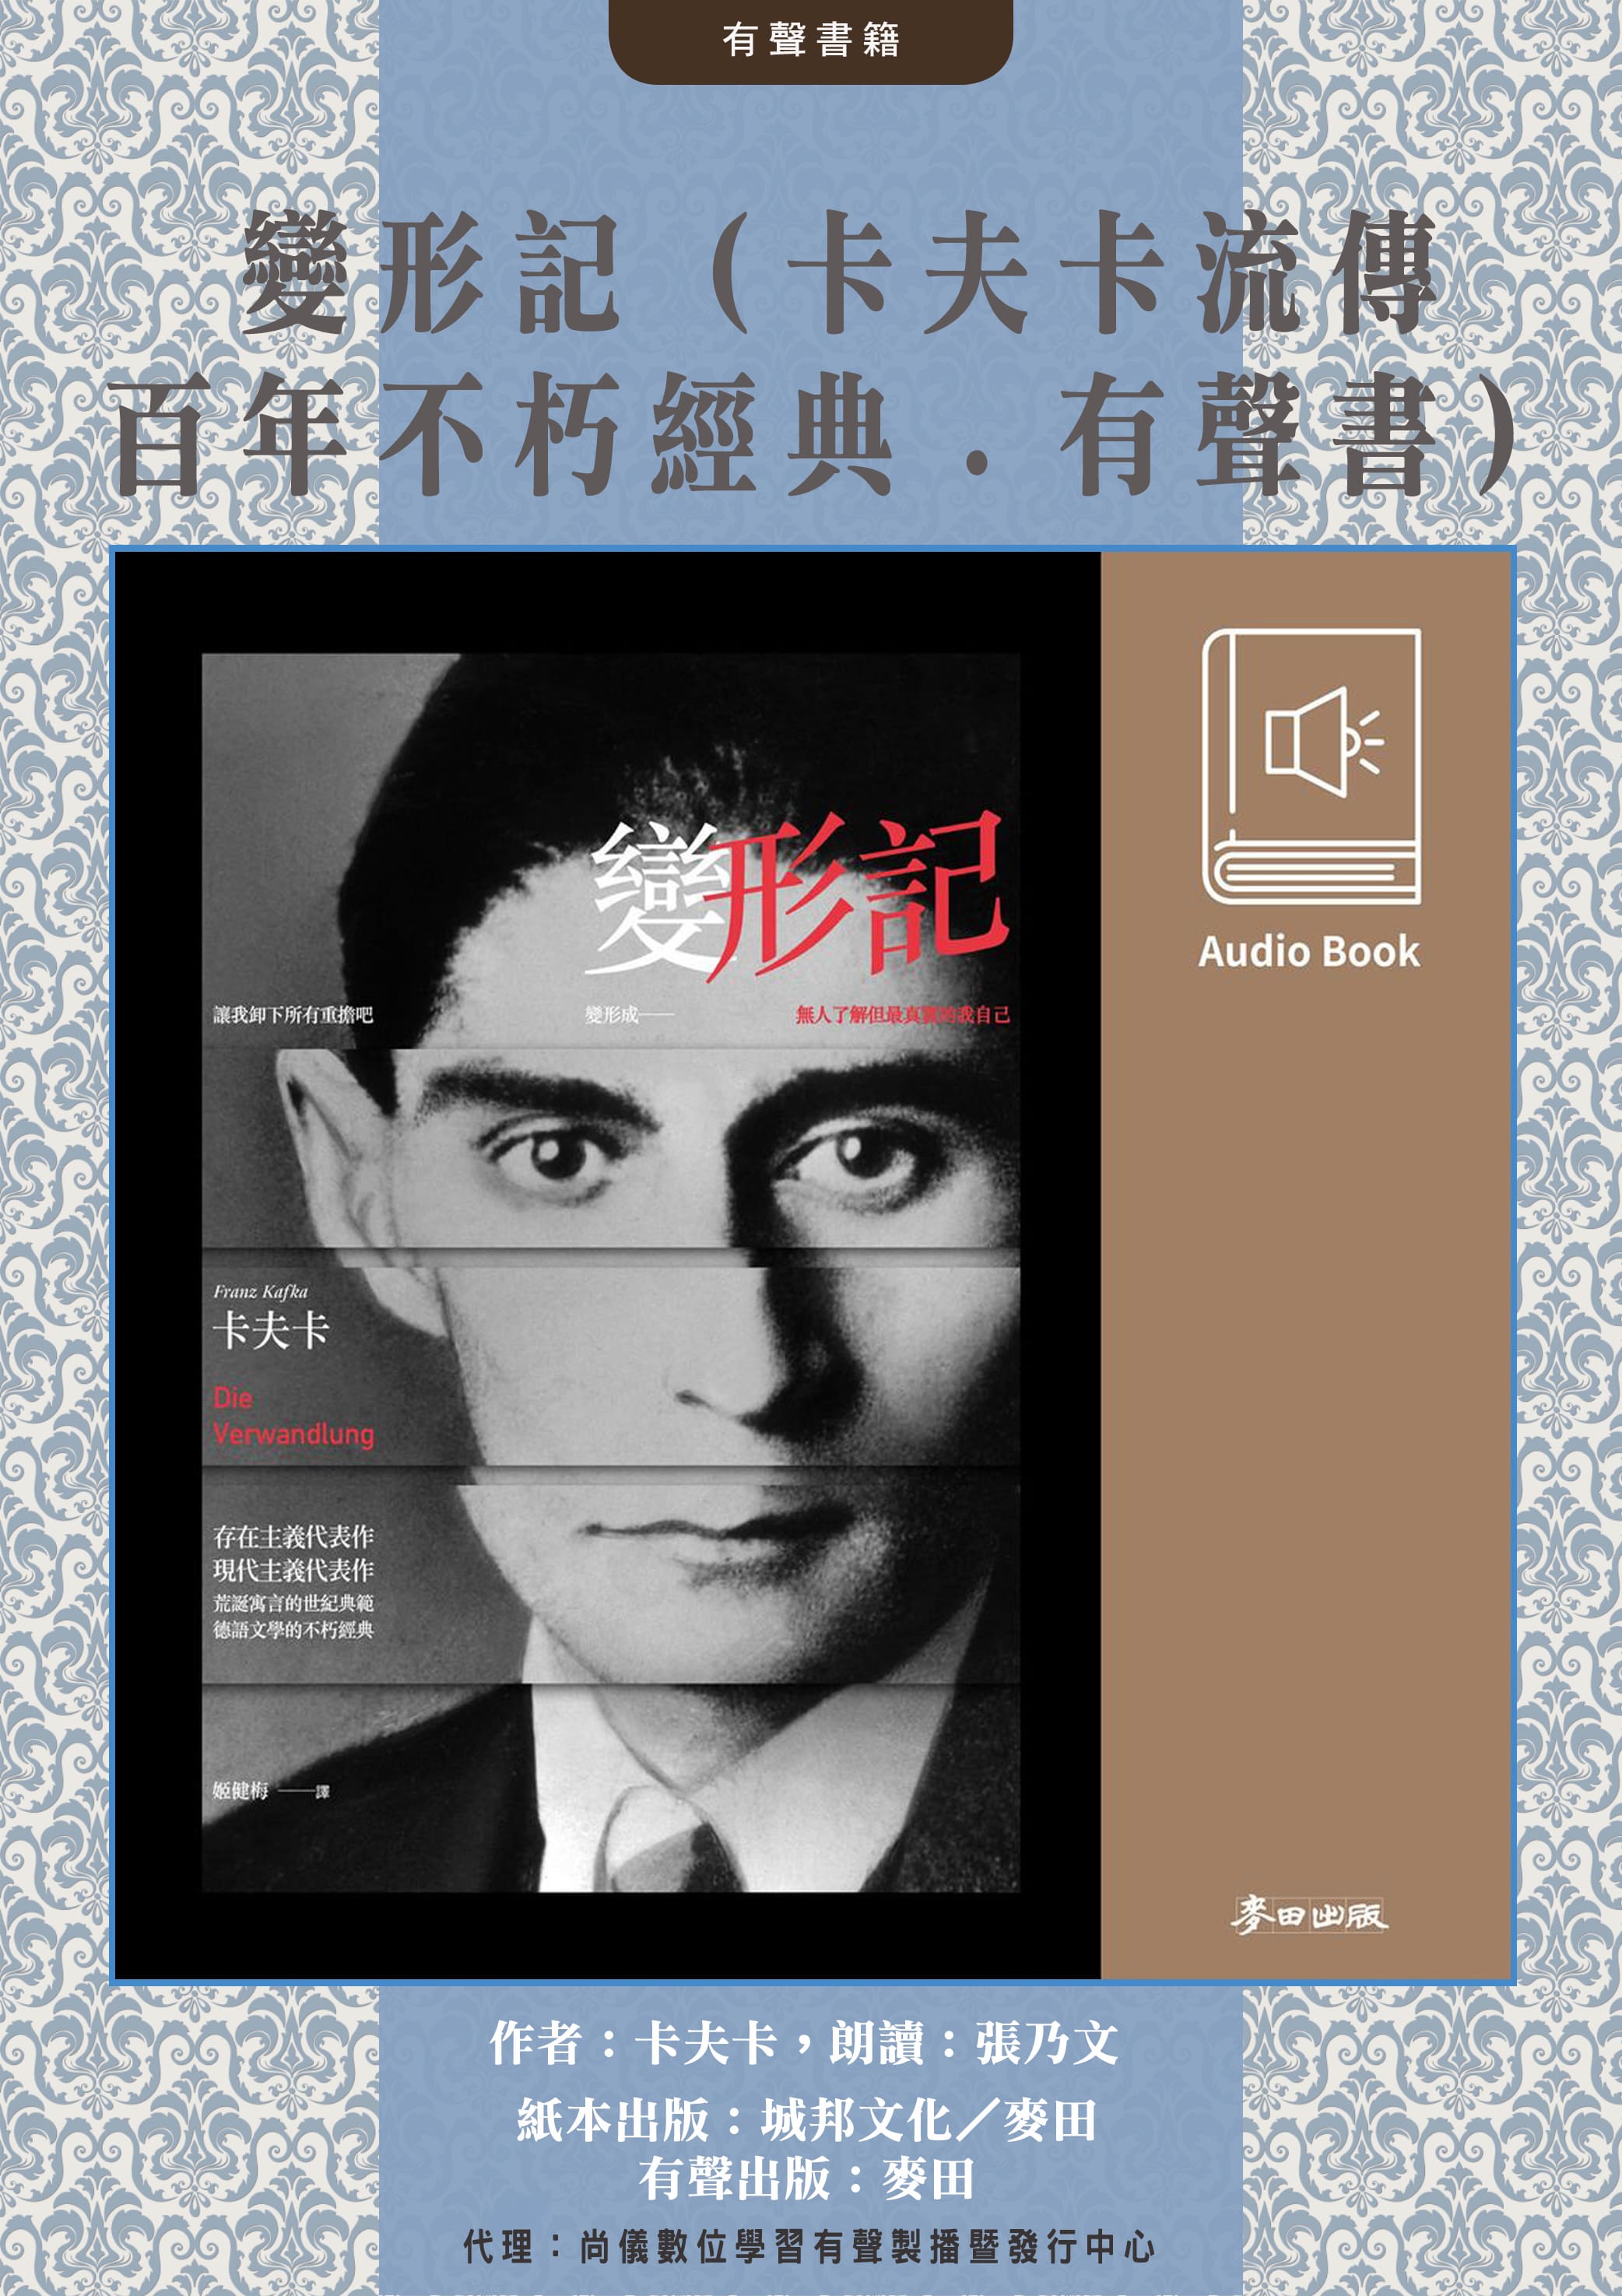 變形記（卡夫卡流傳百年不朽經典．中文版有聲書隆重上市）封面圖